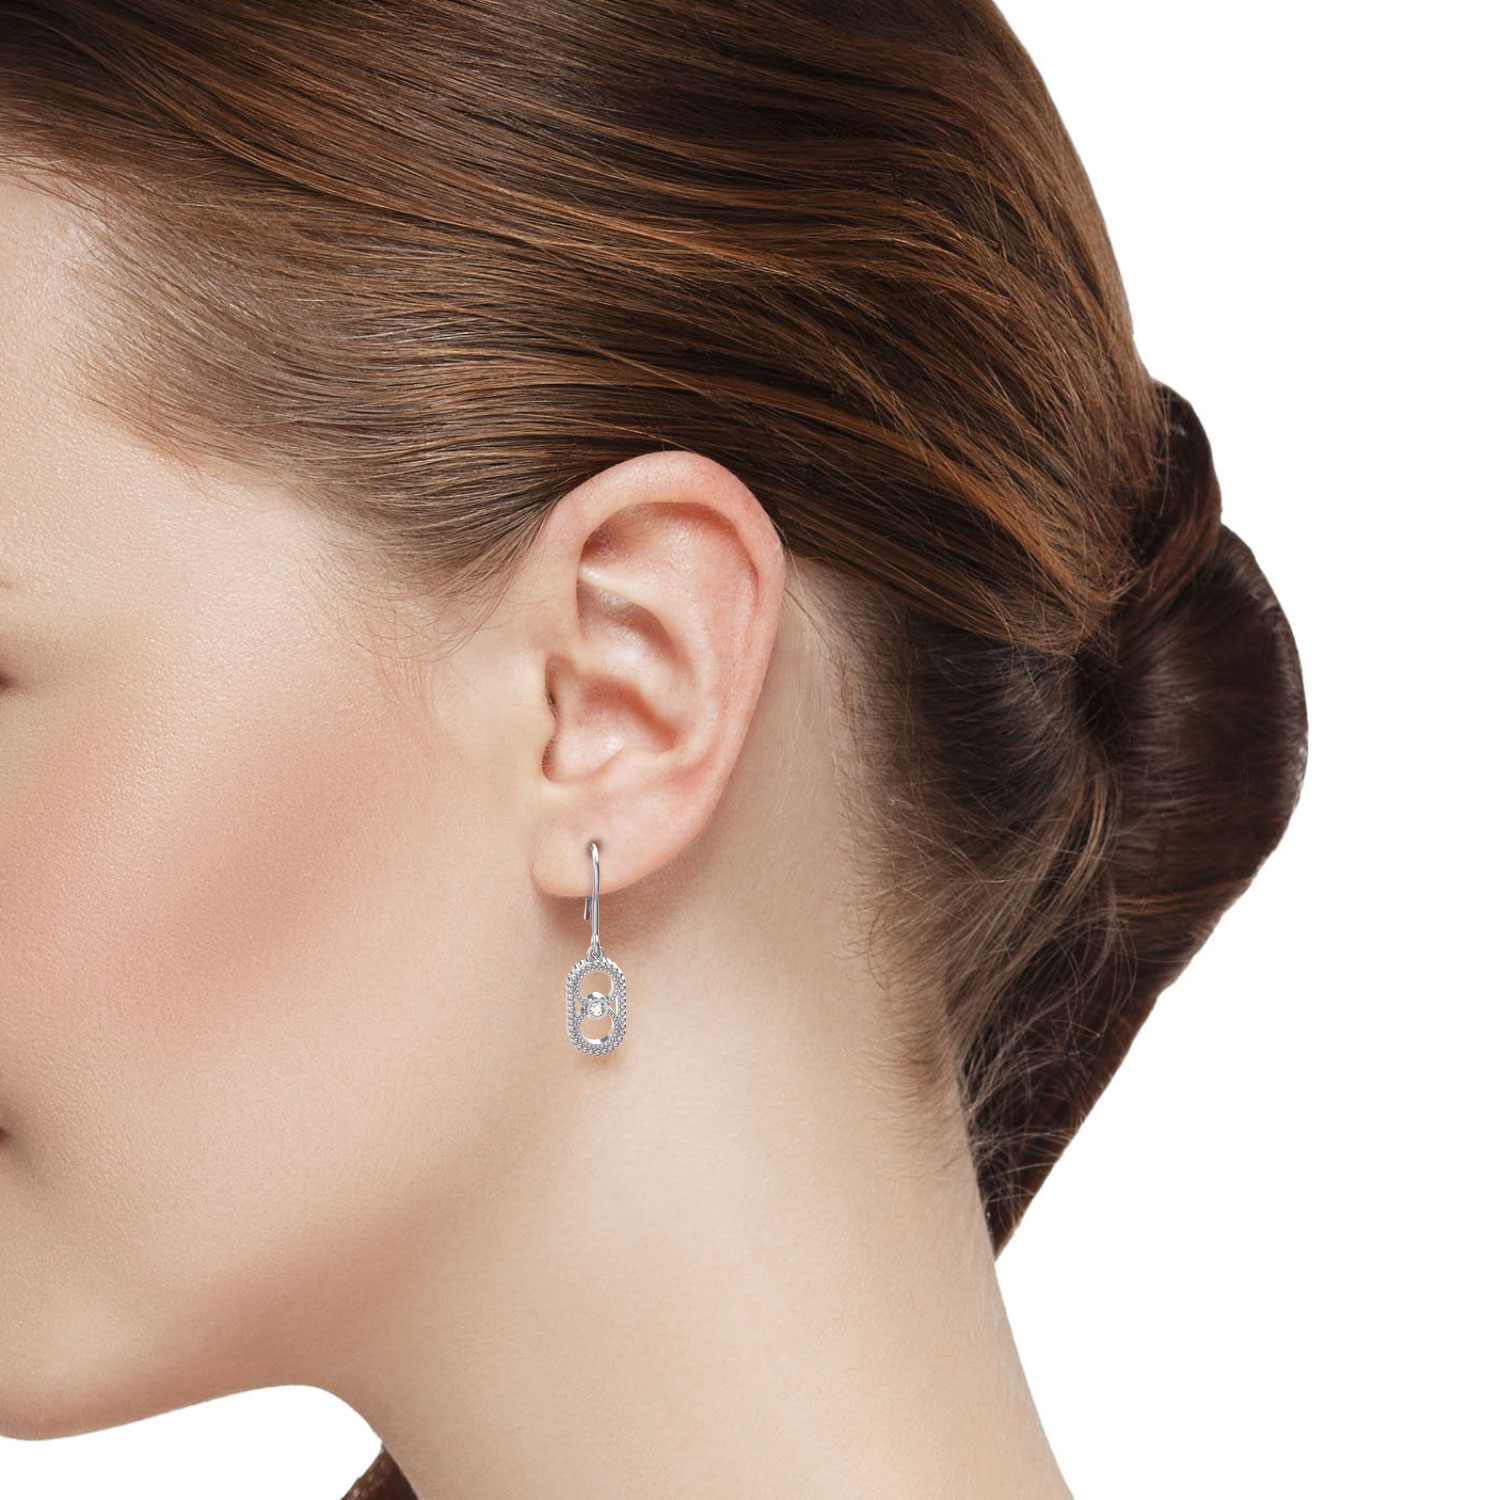 Boucles d'oreilles or et diamant : boucles d'oreille au juste prix !